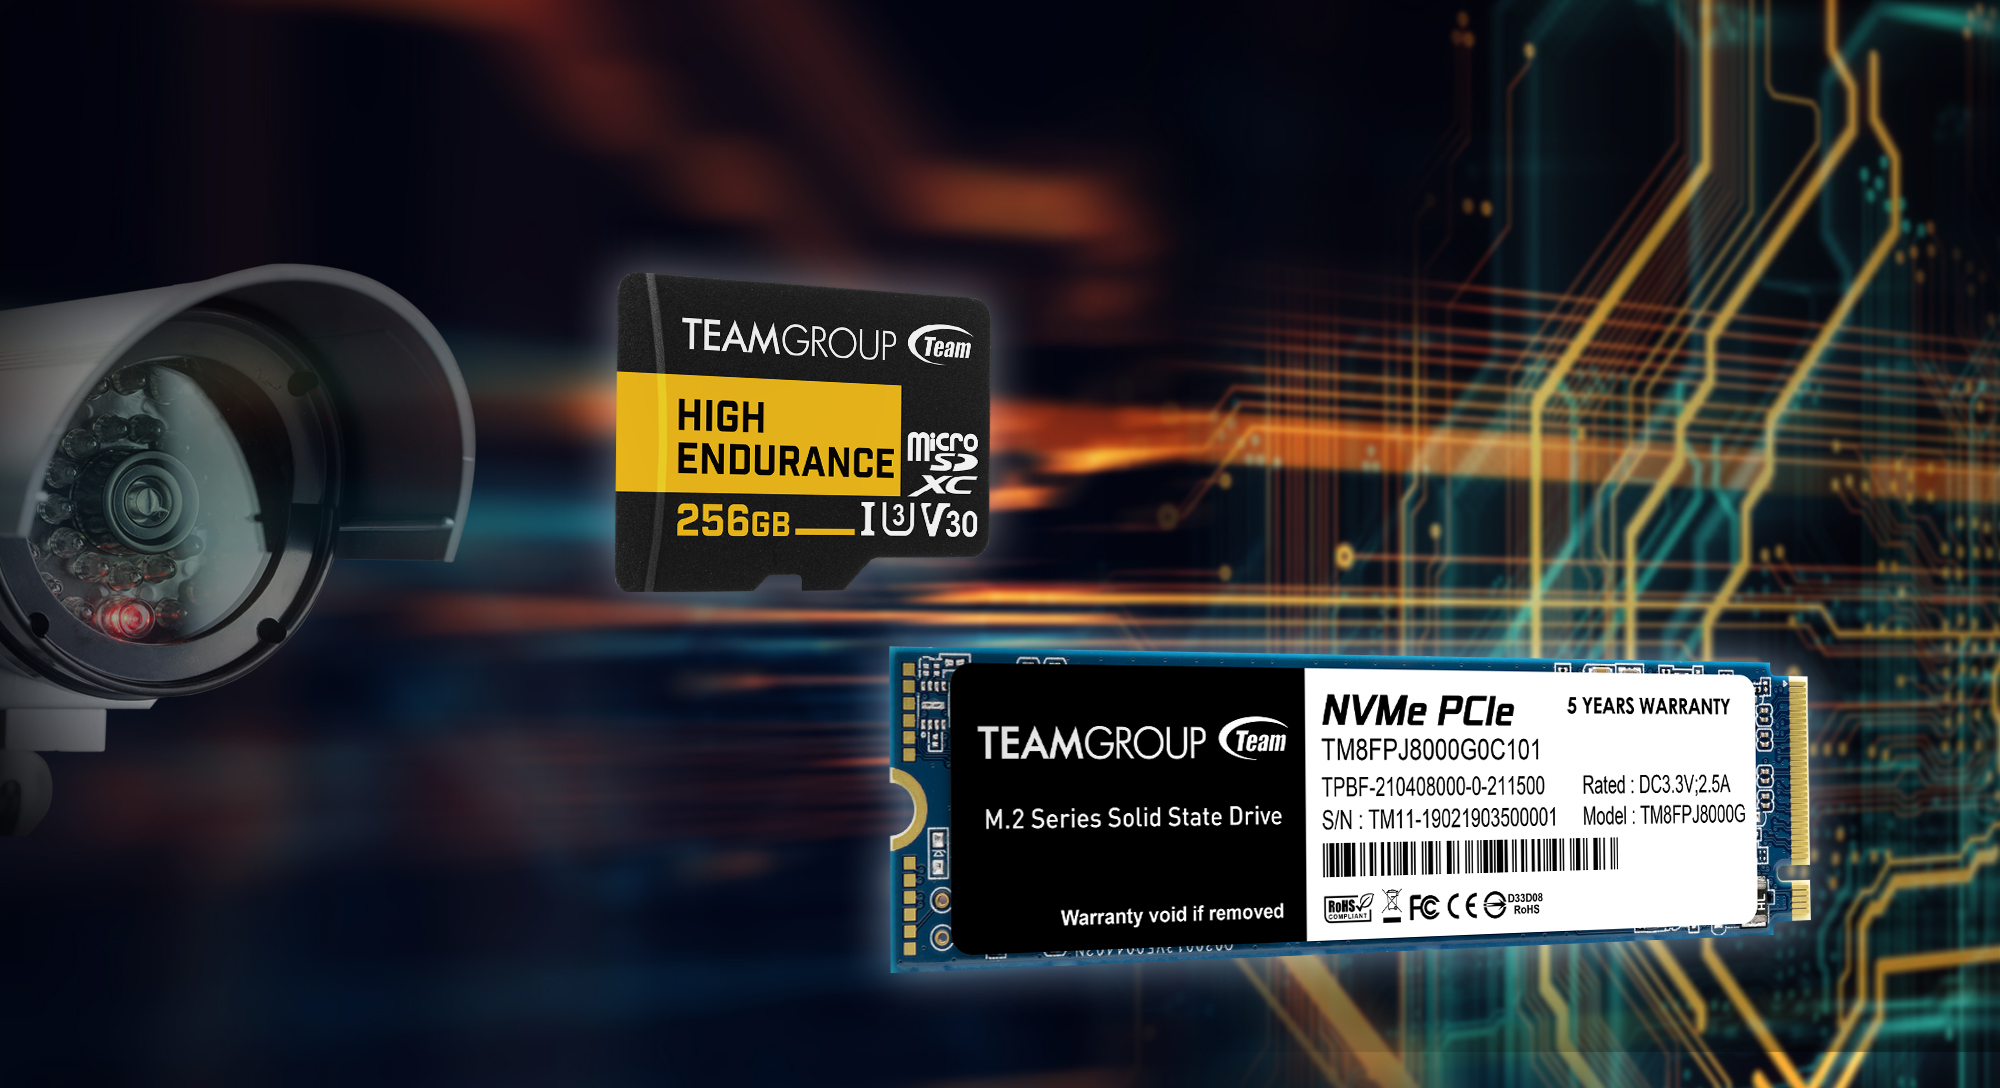 Компания TEAMGROUP представляет рынку новые твердотельный накопитель 8TB MP34Q M.2 PCIe SSD и специально разработанную для мониторинга карту памяти HIGH ENDURANCE